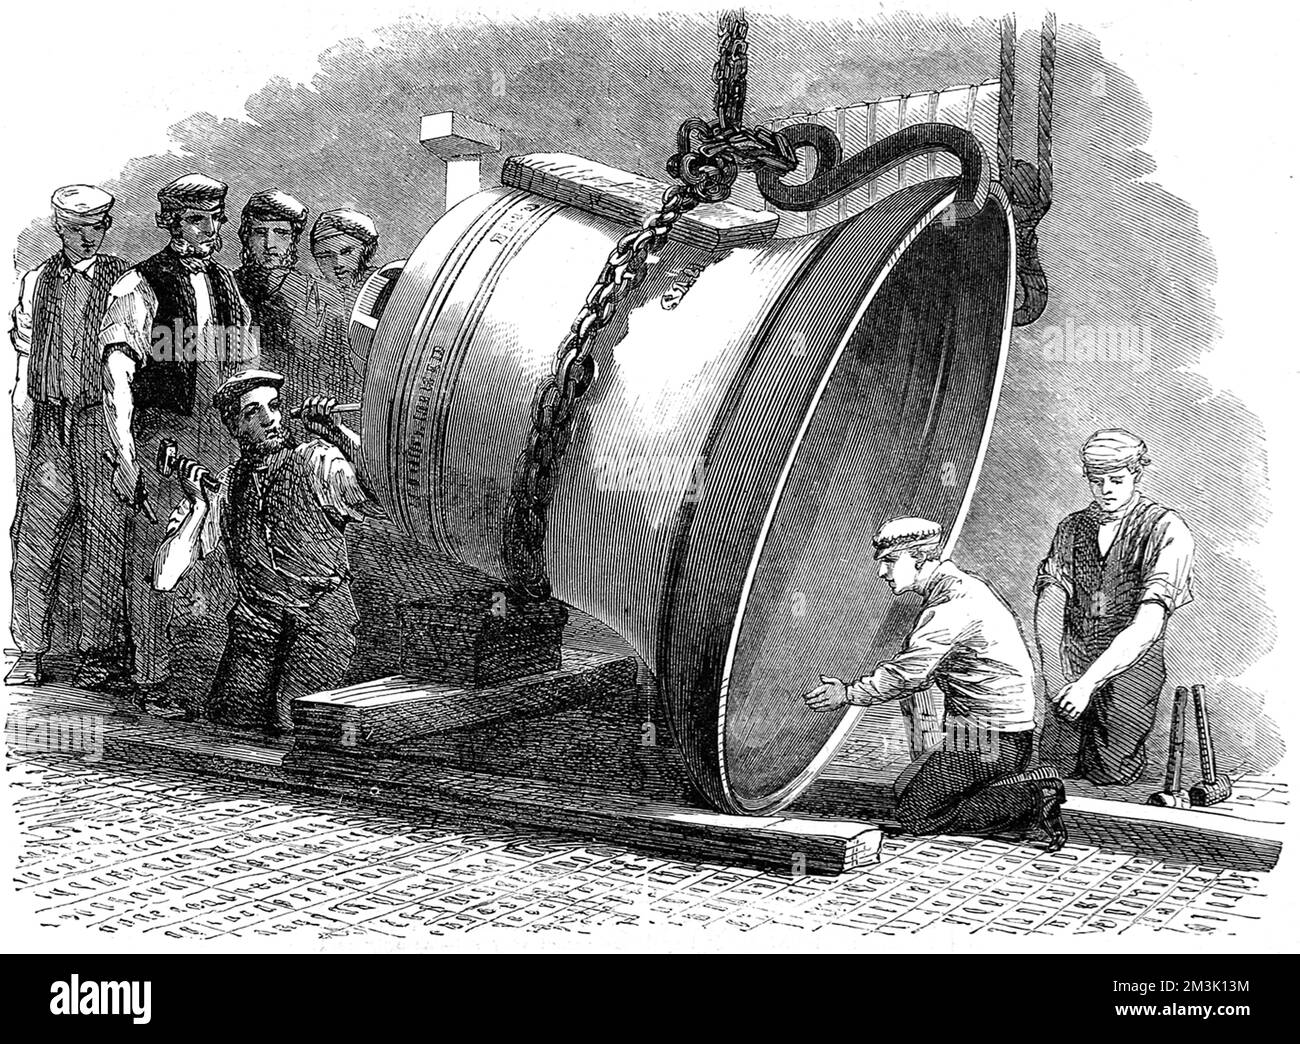 La cloche était la plus grande coulée en acier jusqu'à cette époque. La cloche pesait 2tons 12 tonnelles ou 5 824 lb, hauteur 5 pieds 3 pouces, diamètre à l'embouchure 6 pieds 2 pouces, épaisseur à l'arceau acoustique 4and un quart pouces. 1860 Banque D'Images